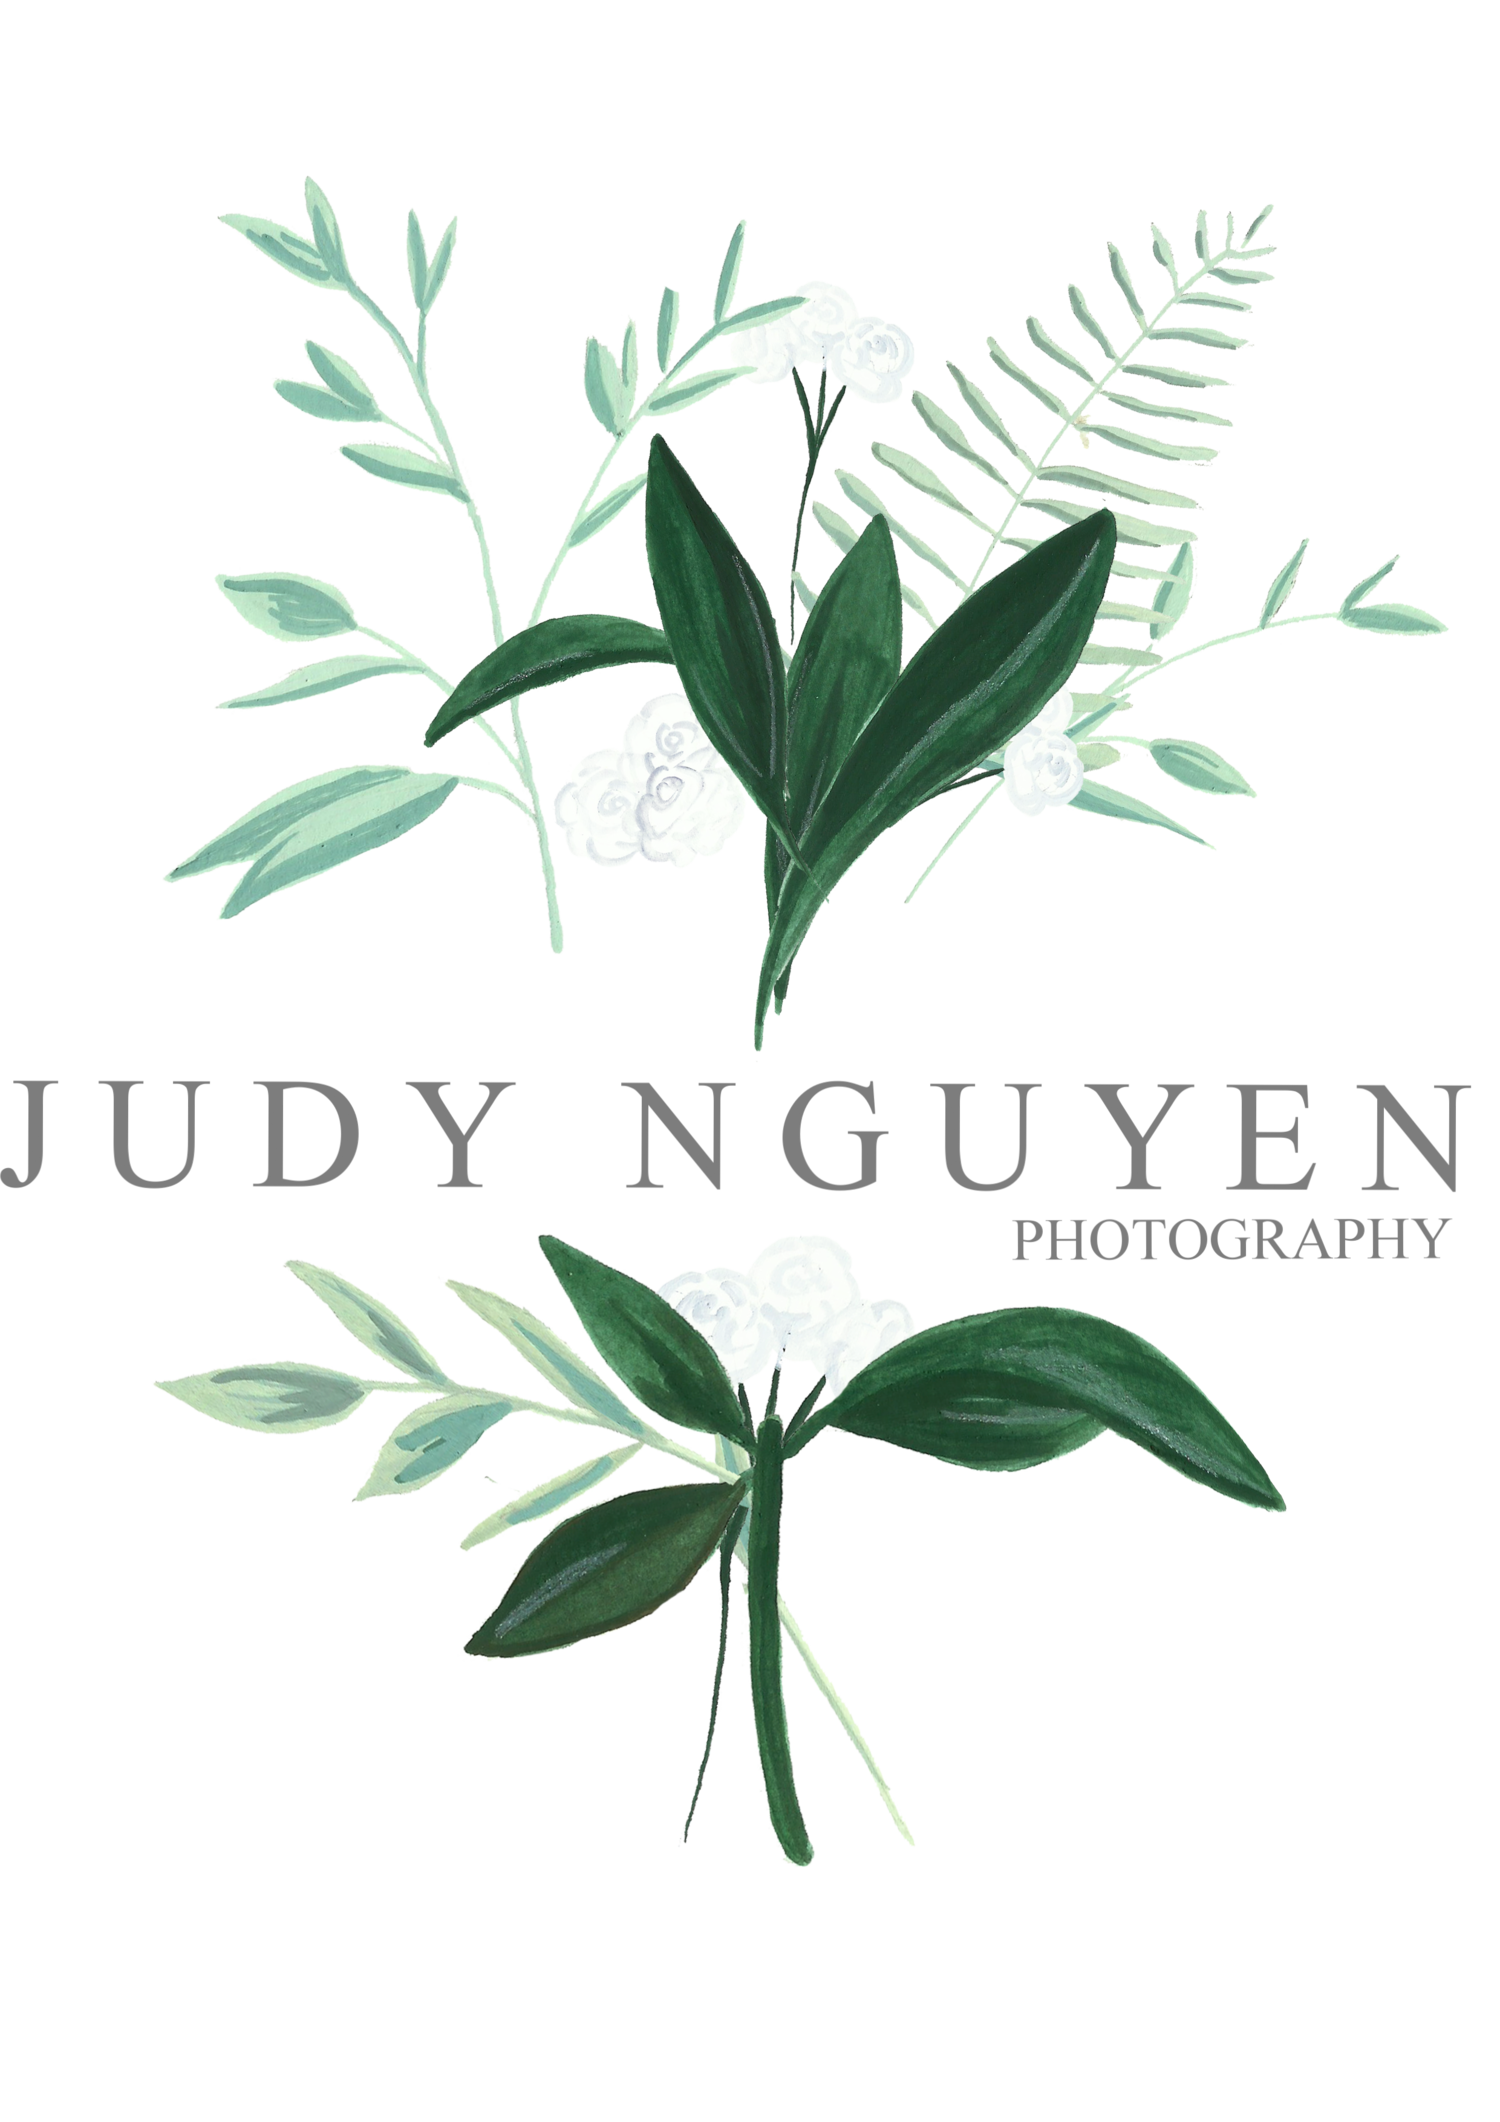 Judy Nguyen